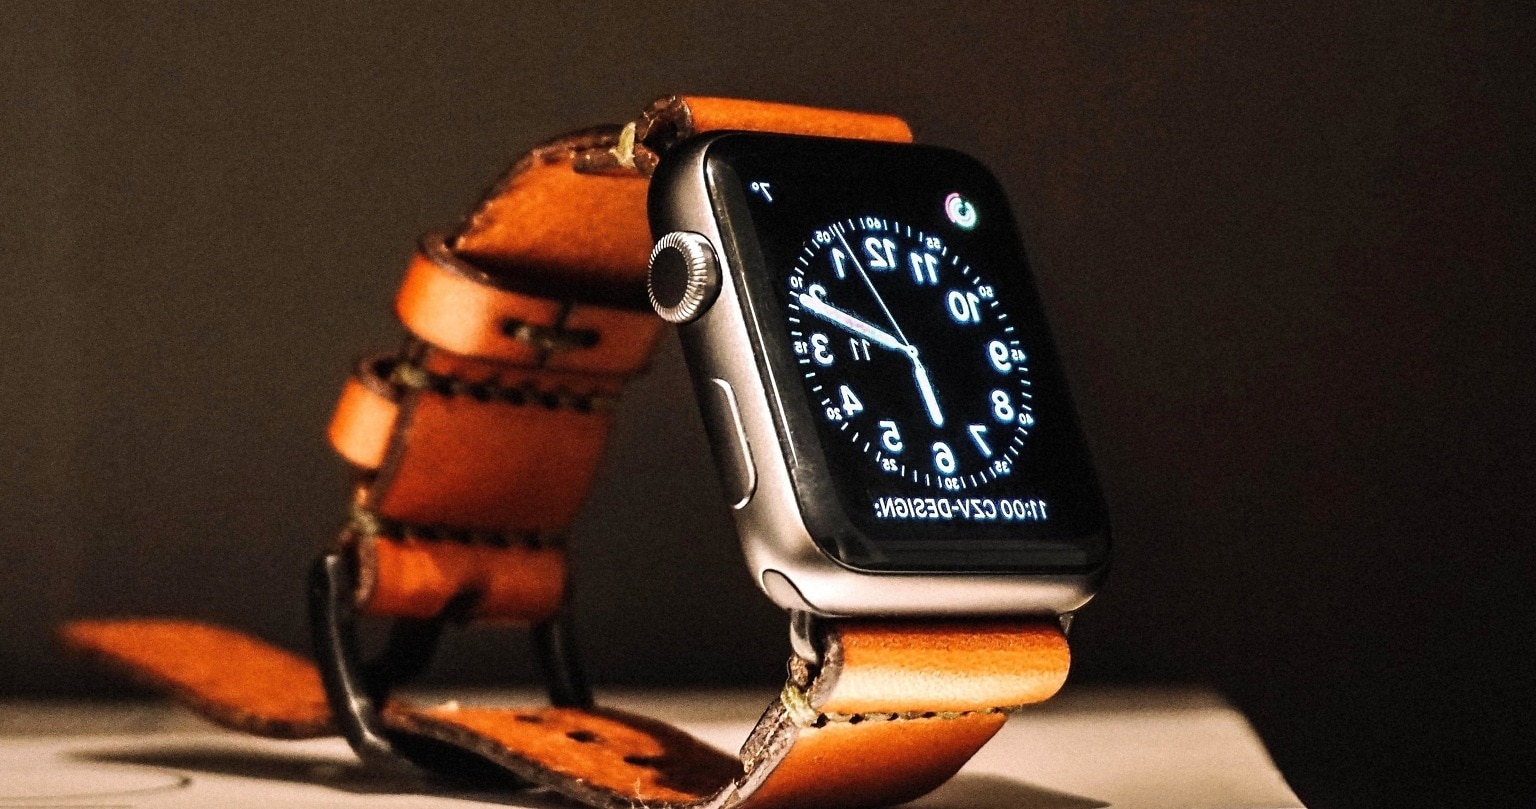 Реальные предметы времени. Обои на смарт часы. Apple watch with Leather. Гаджеты темная. Ретро обои для смарт часов.